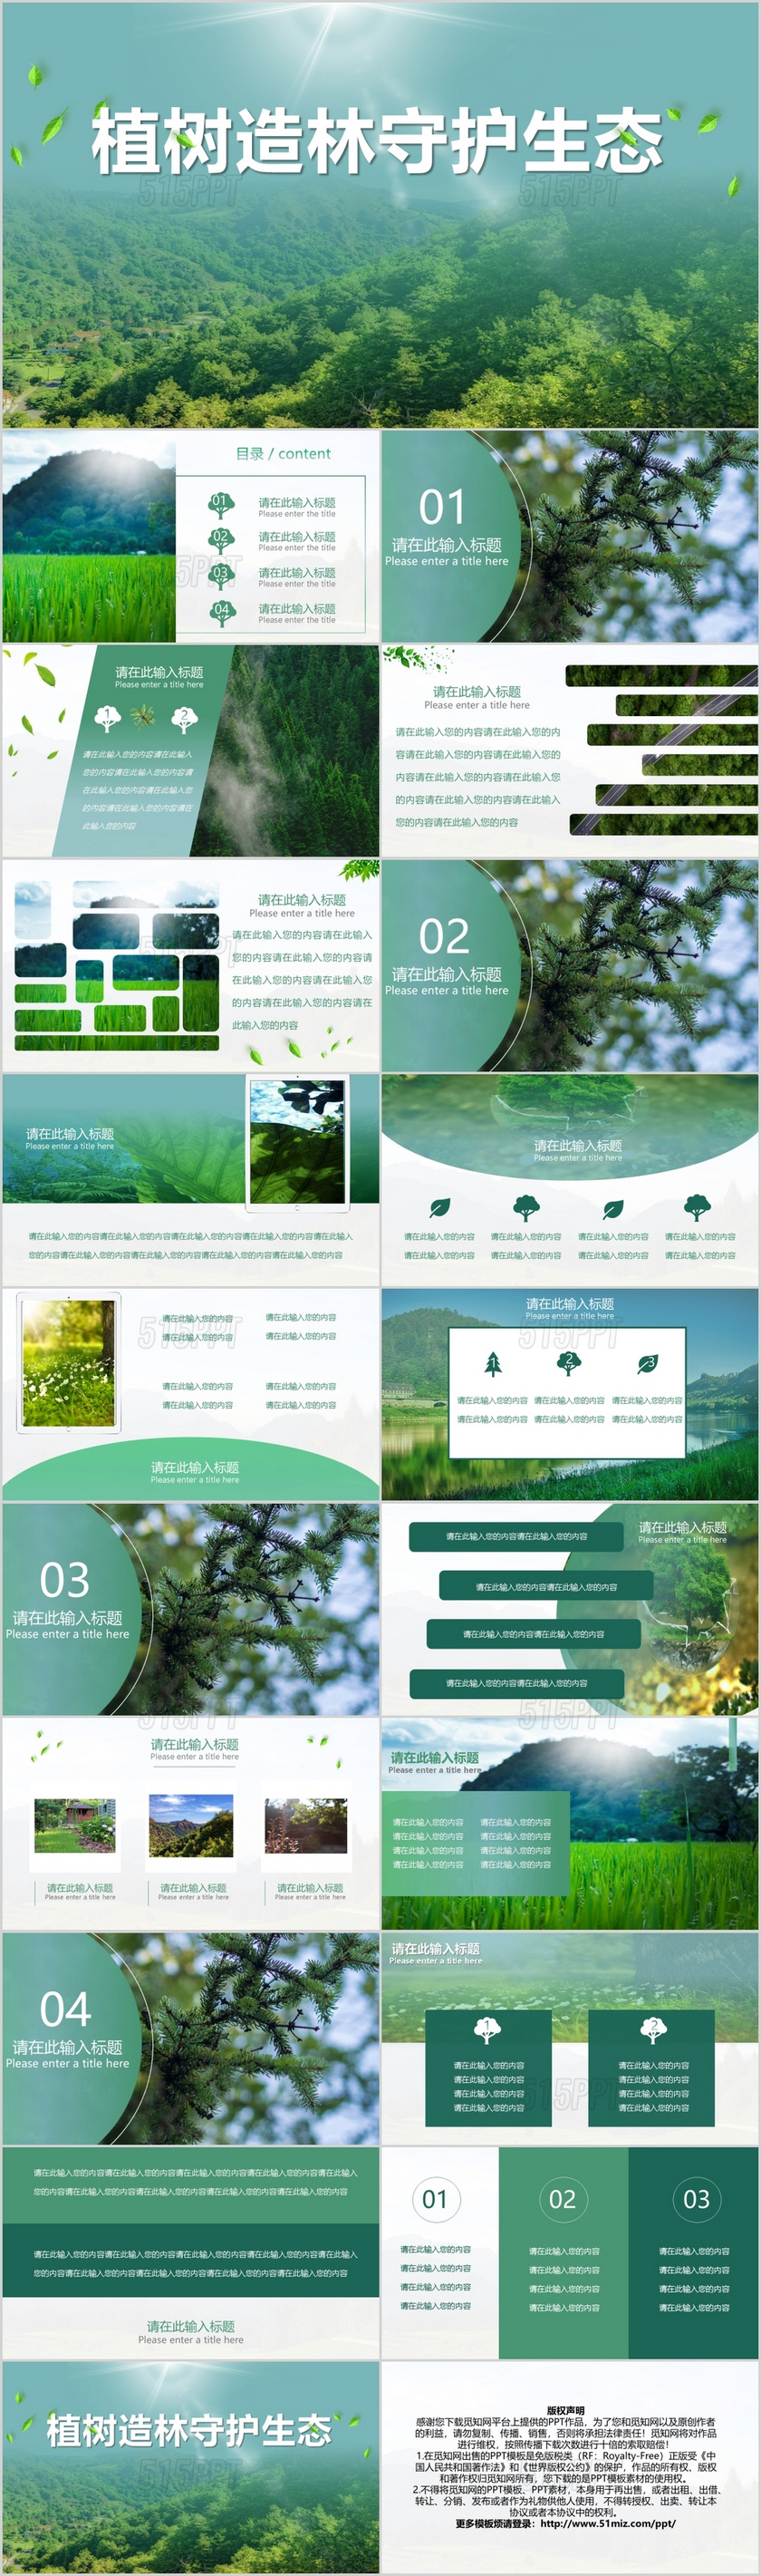 绿色简约创意植树节活动策划PPT模板宣传PPT动态PPT